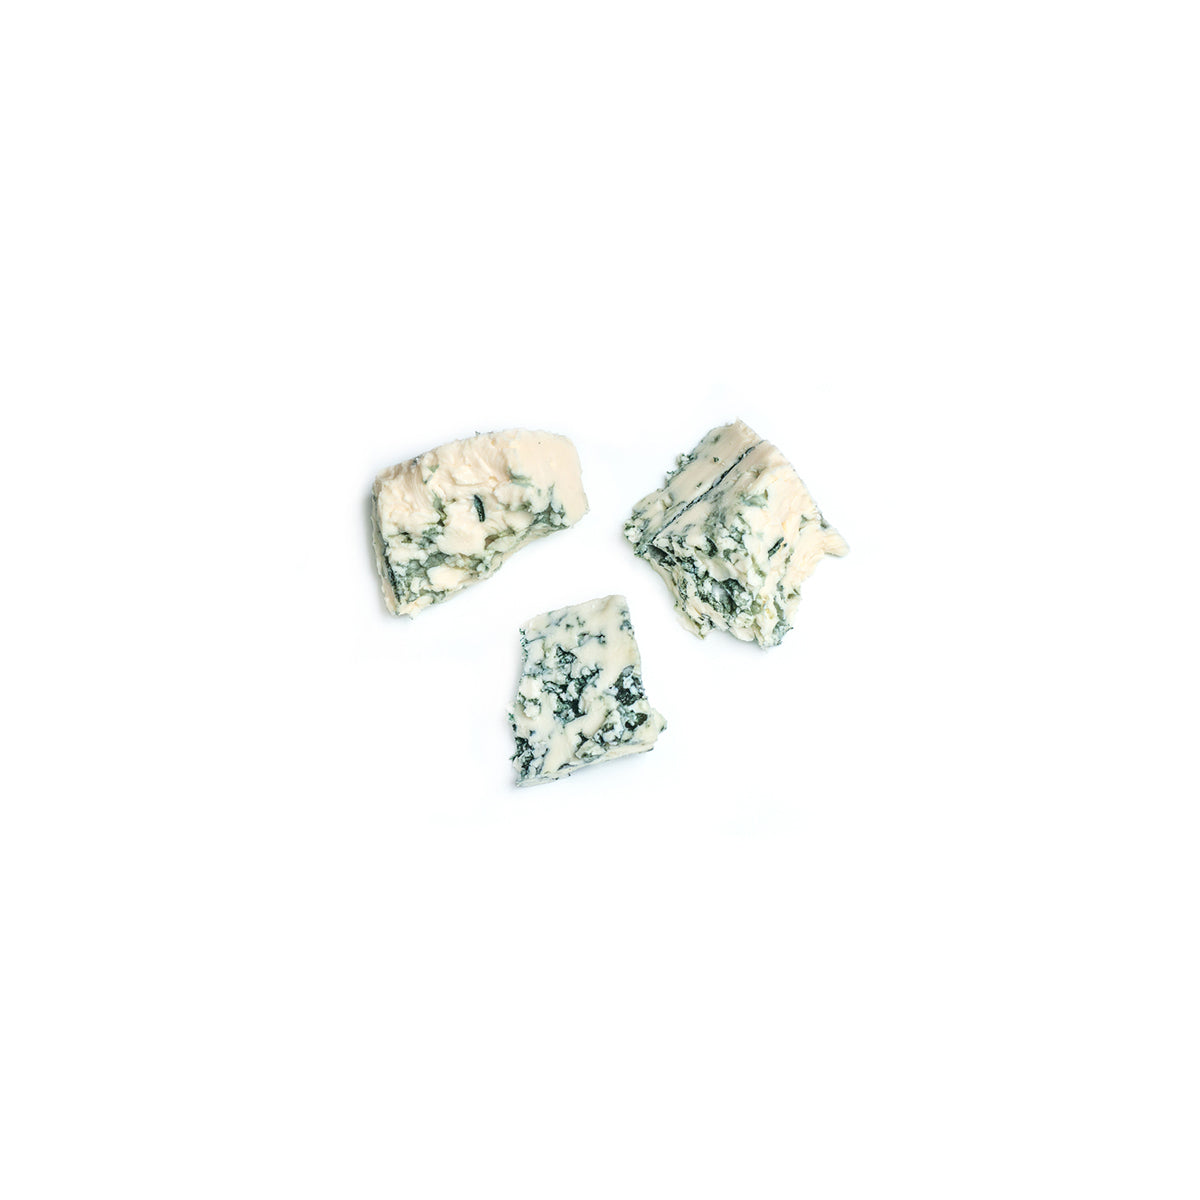 Sartori Blue Cheese Crumbles